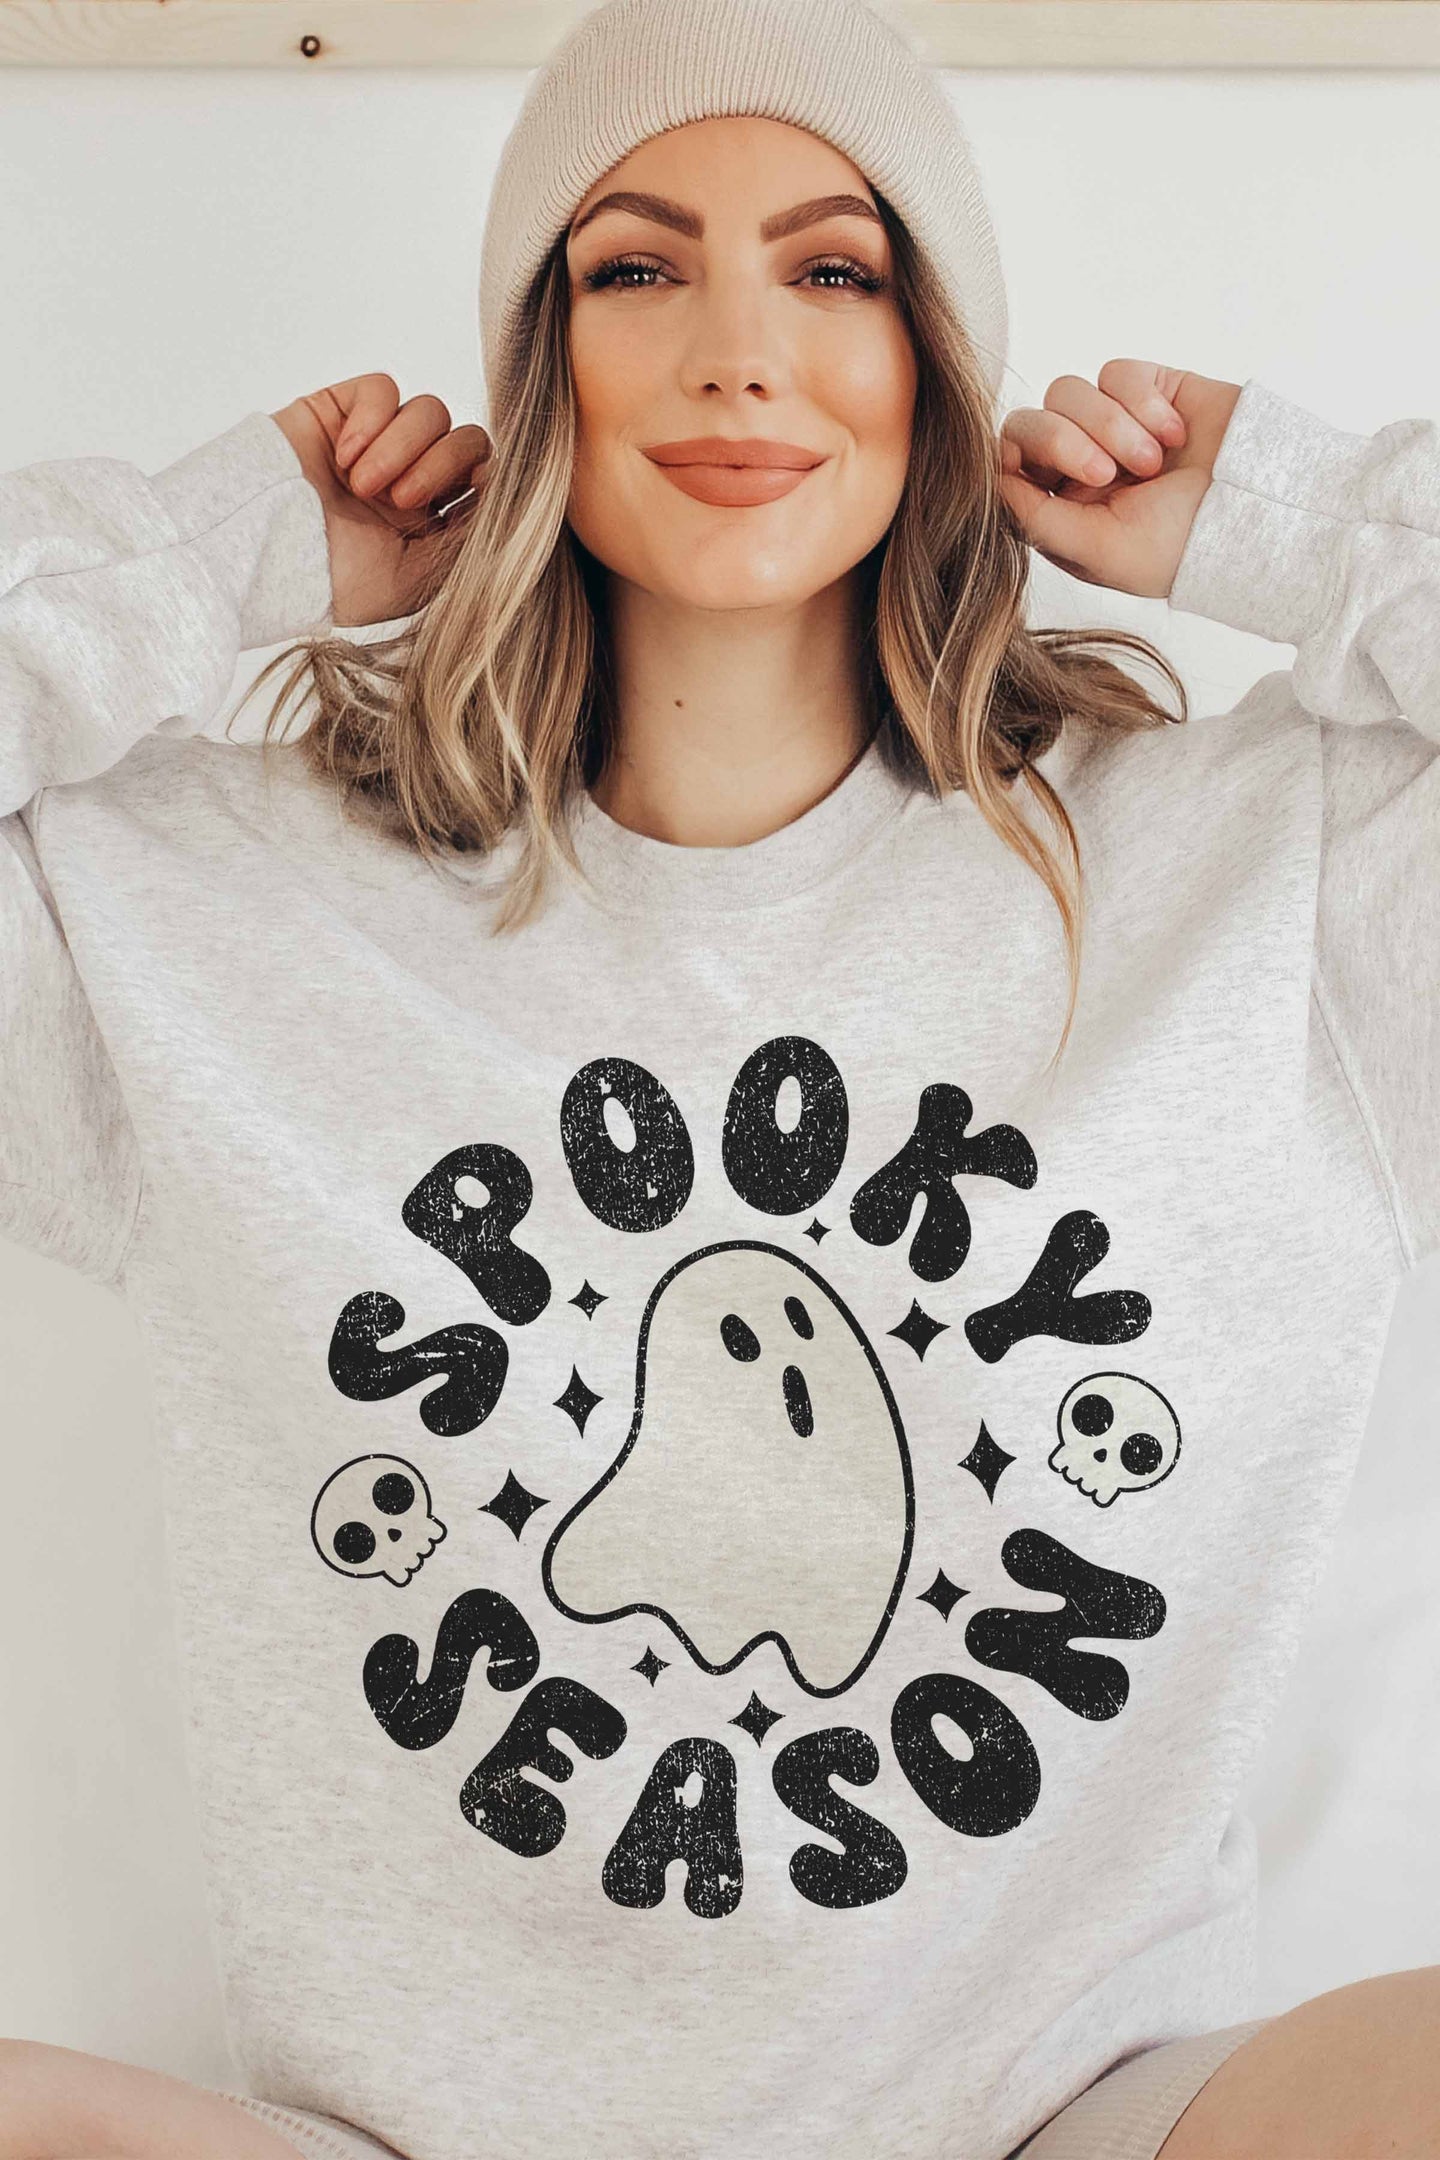 Spooky Season Crewneck Ghost Graphic Sweatshirt Pullover - Gray